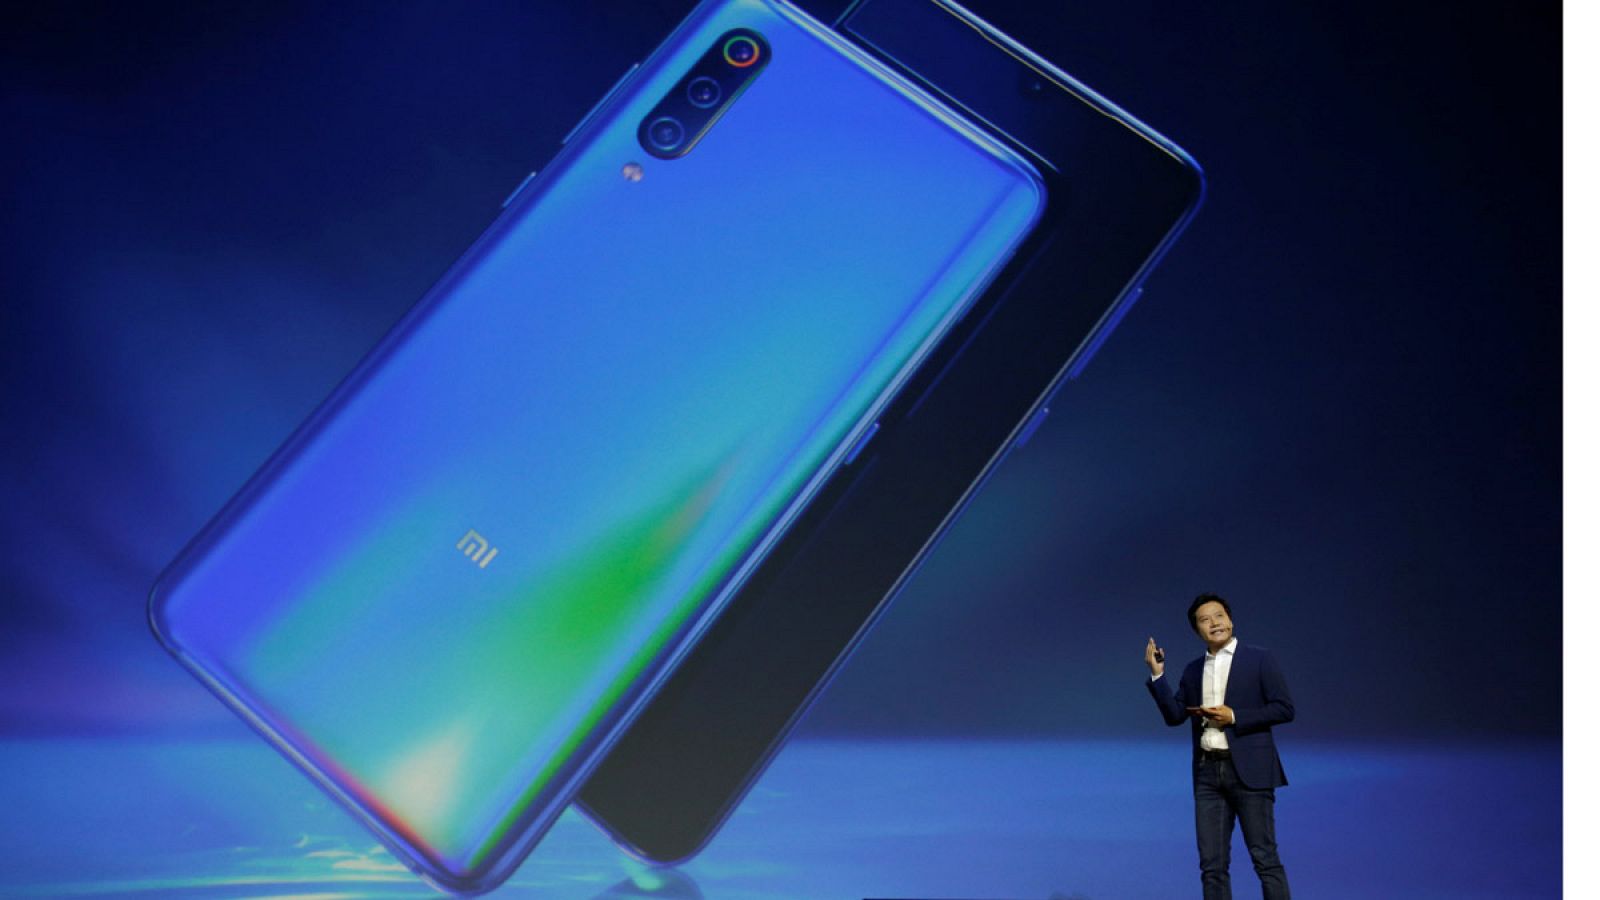 El fundador y CEO de la empresa tecnológica Xiaomi, Lei Jun, presentando el nuevo teléfono inteligente Xiaomi Mi 9 en Pekín